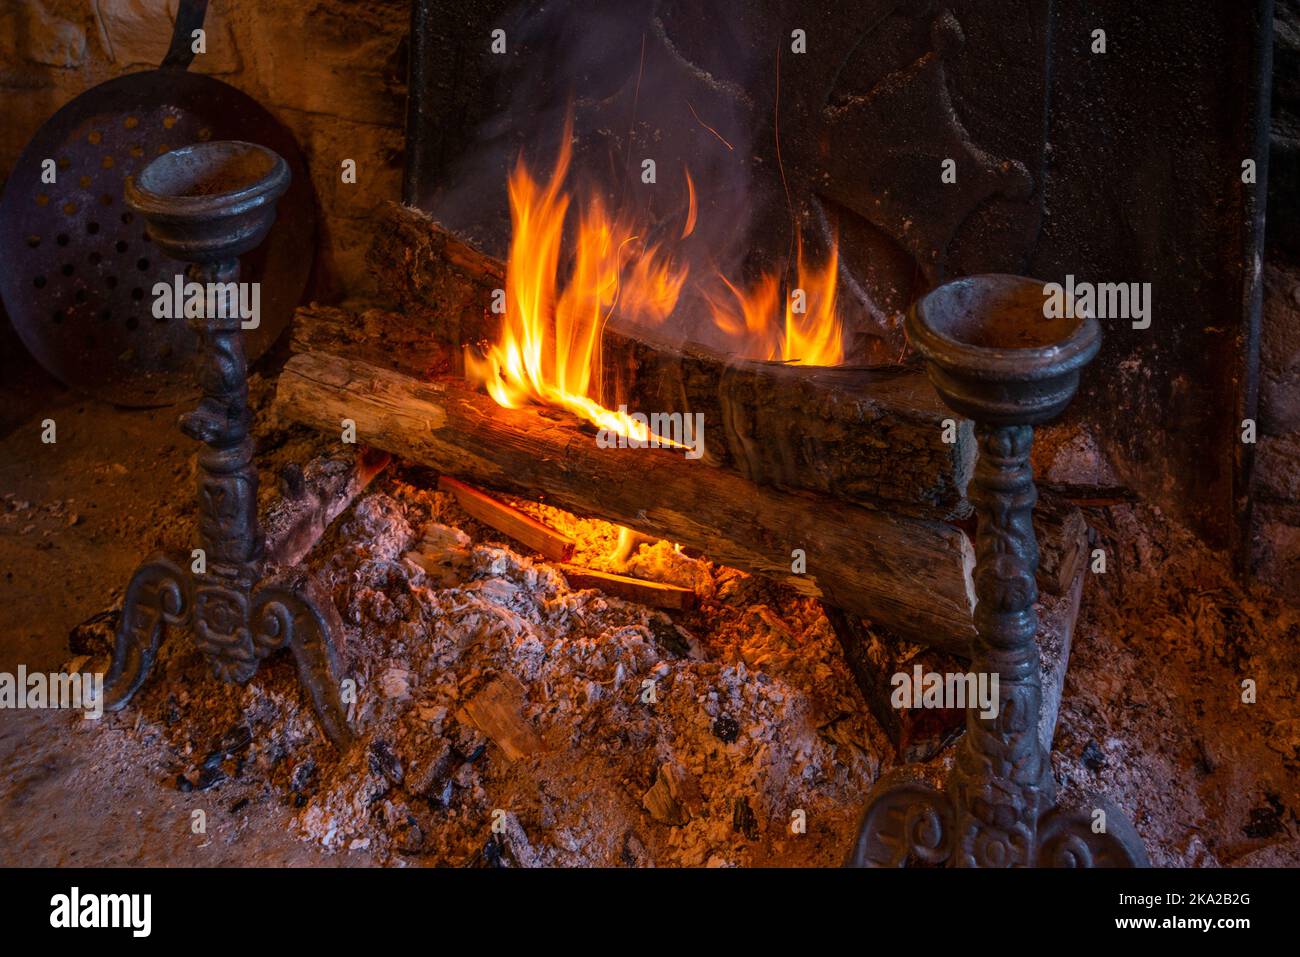 Eine Nahaufnahme von Holzstämmen, die auf einem typischen Herdfeuer brennen, mit Metallschmuck am Kamin. Stockfoto